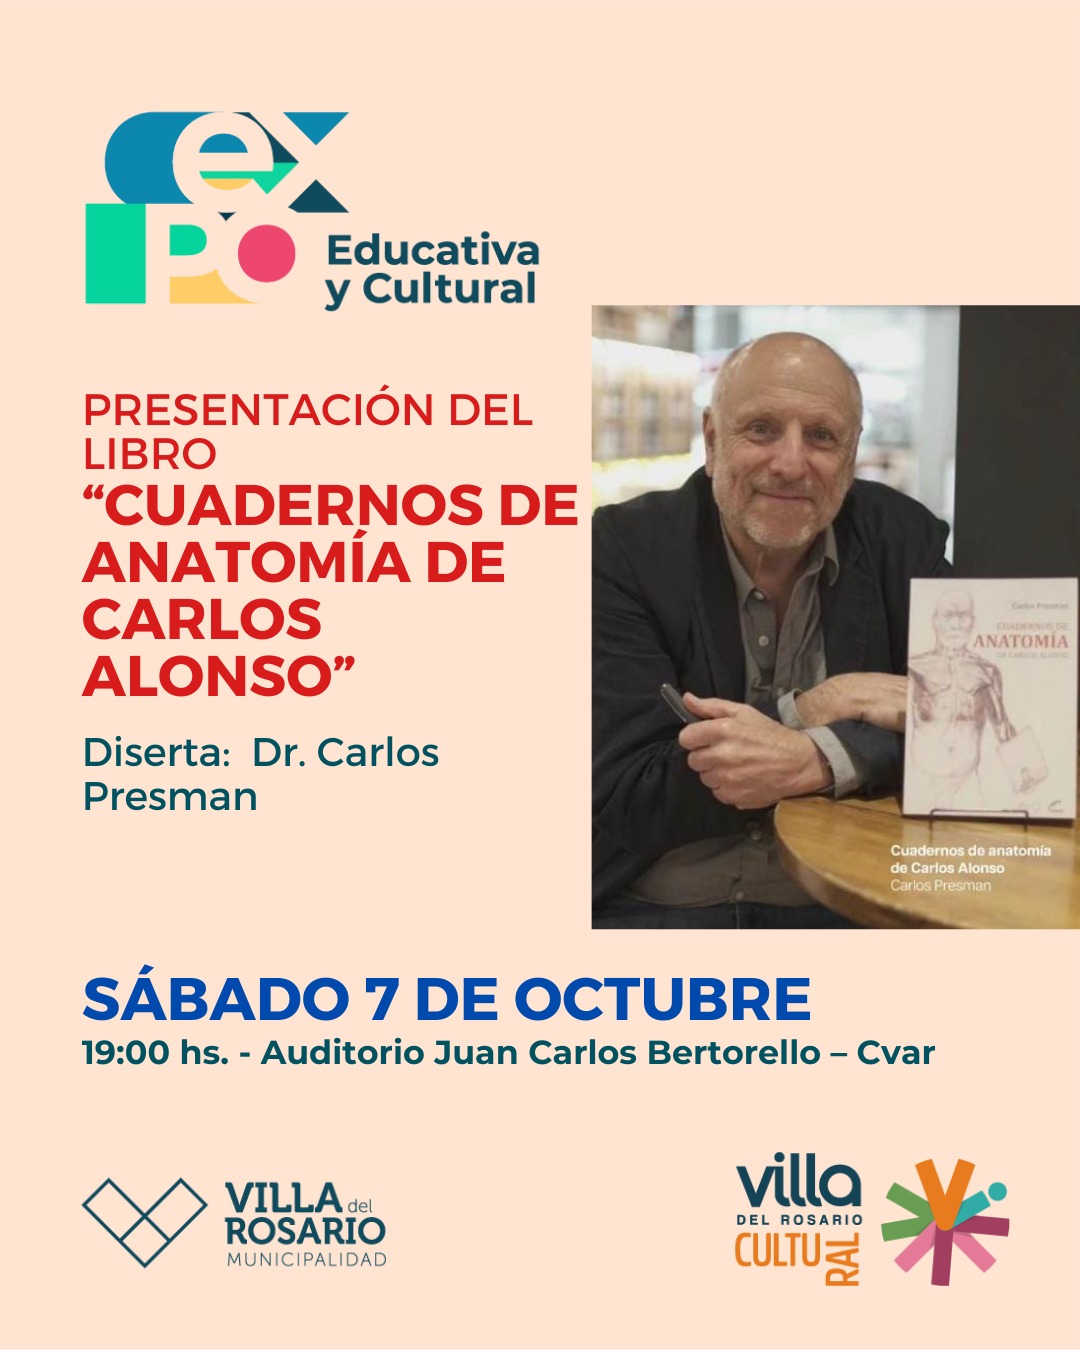 Presentación del libro “Cuadernos de anatomía de Carlos Alonso” en Villa del Rosario